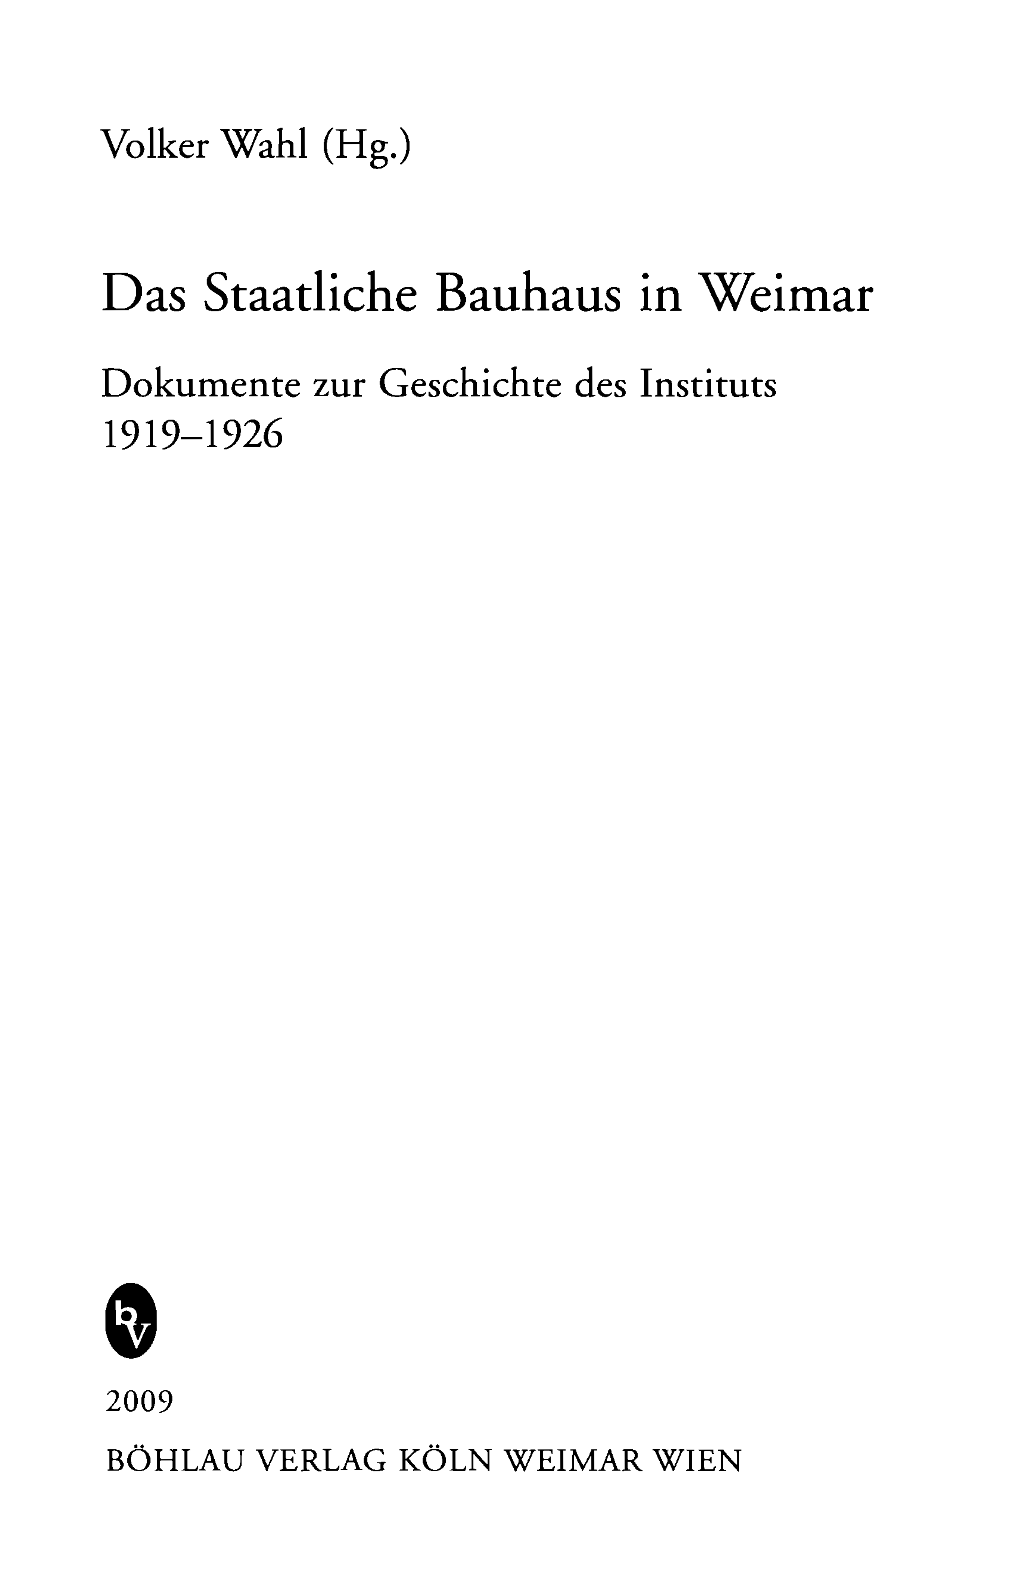 Das Staatliche Bauhaus in Weimar